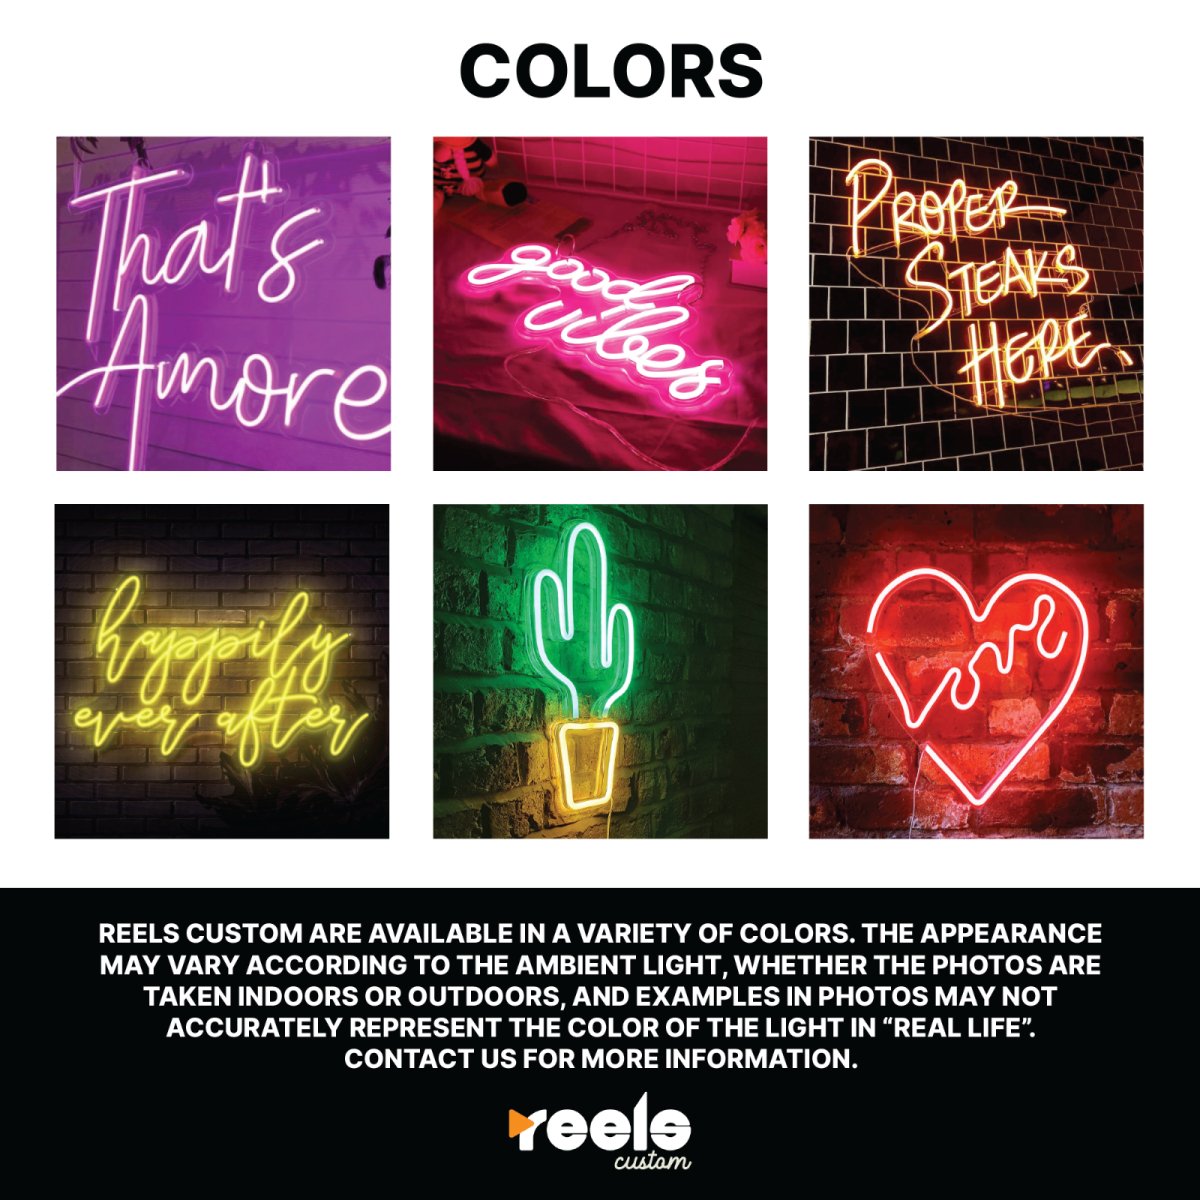 Oktober Fest Neon Sign - Reels Custom